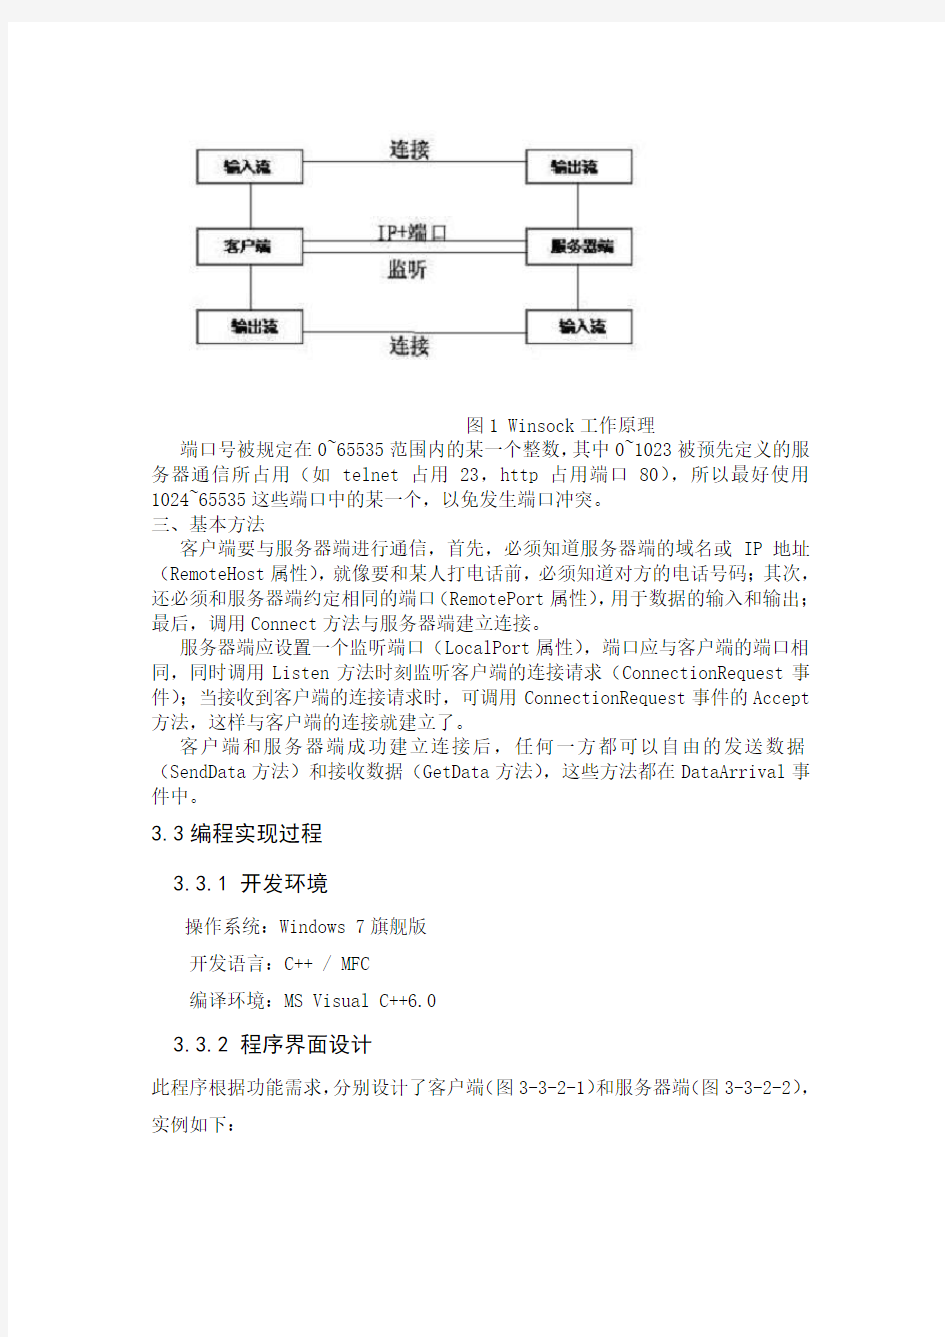 中南大学计算机网络课程设计 文件传输程序